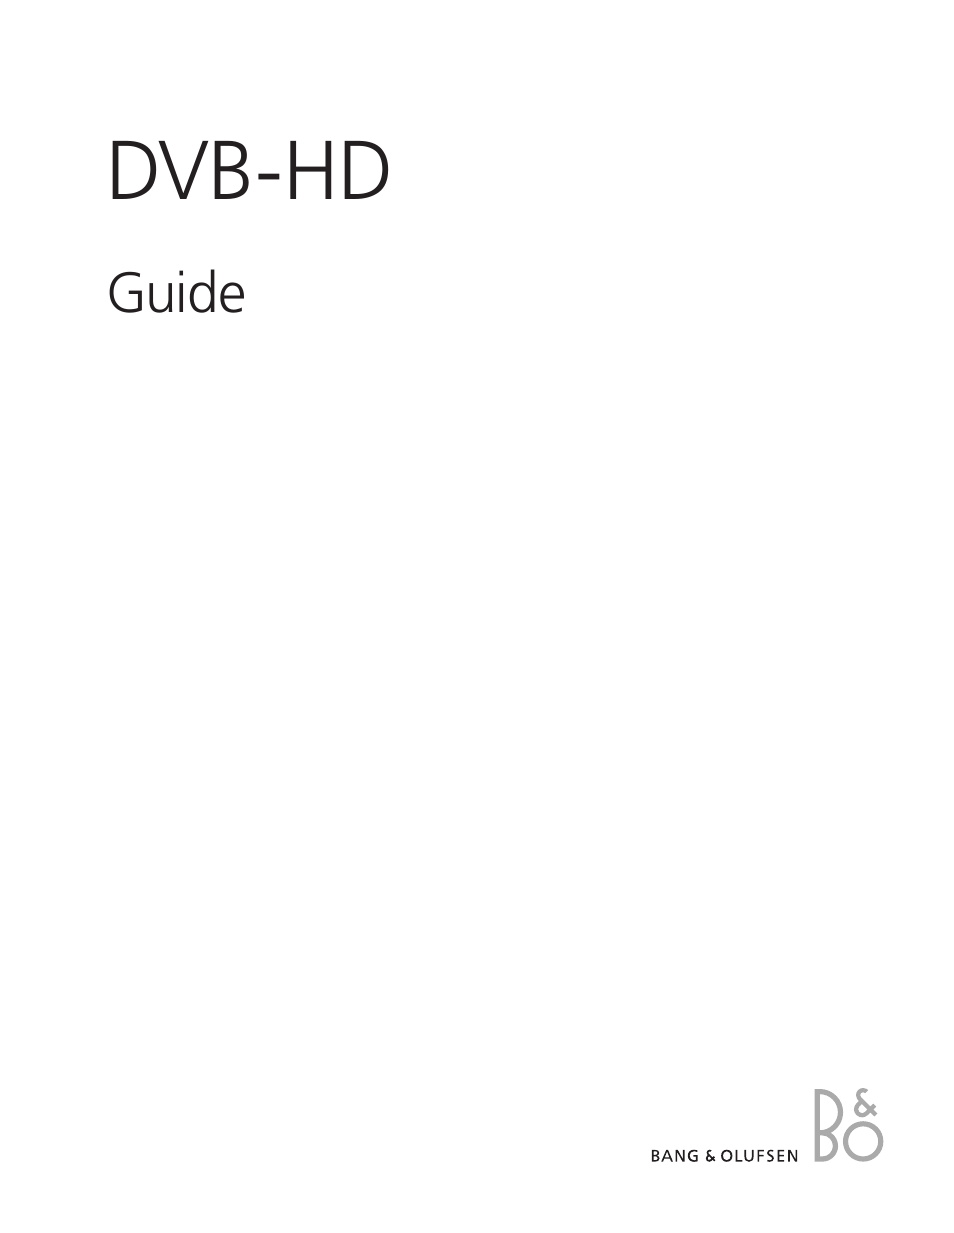 DVB-HD - User Guide